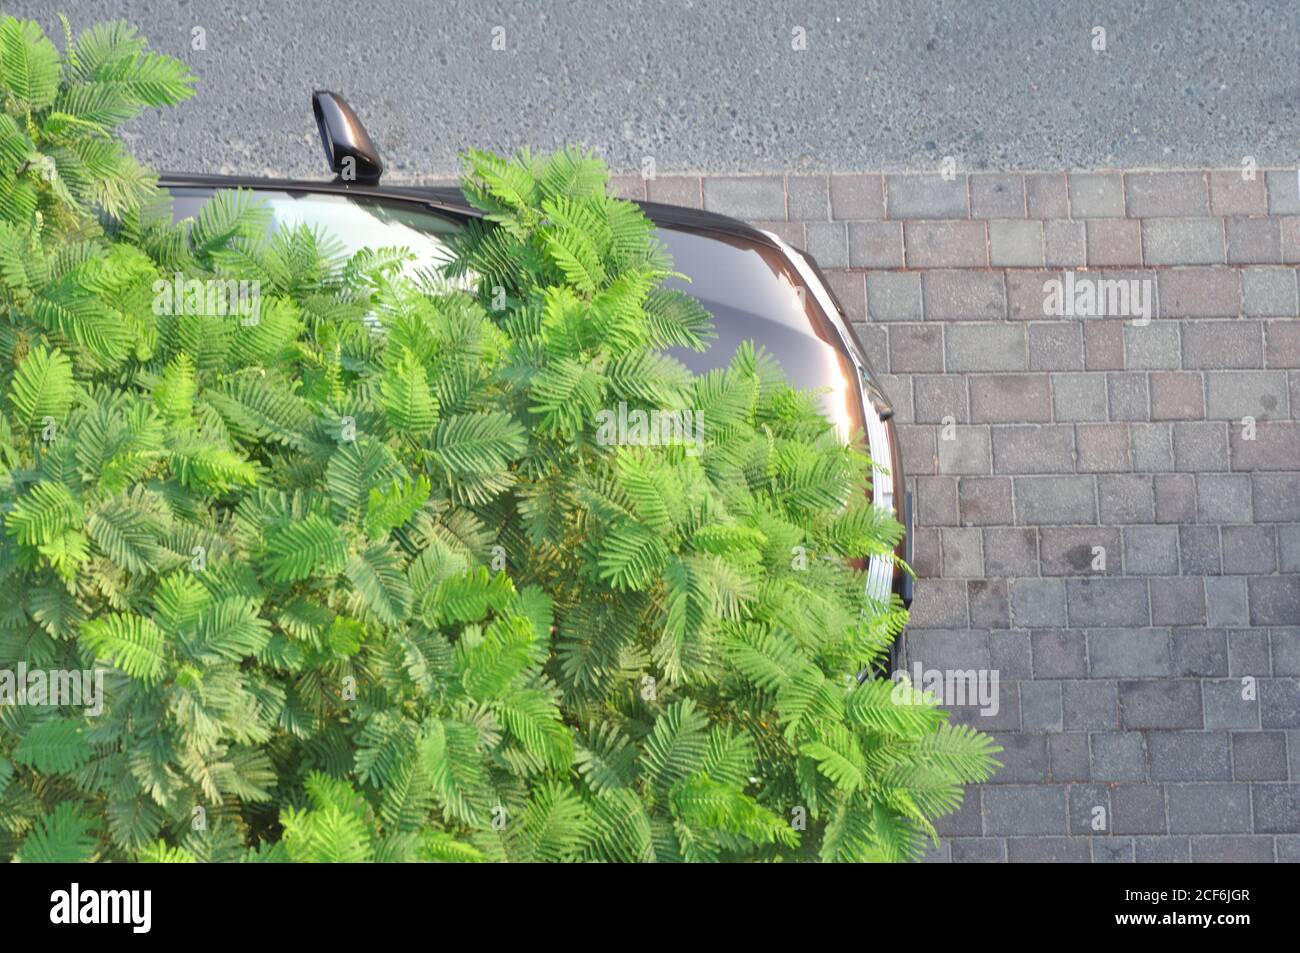 Städtischer Beton Dschungelbaum. Auto unter Smaragd und olivgrünen Baum geparkt. Natur vs von Menschen gemacht Designs. Stockfoto